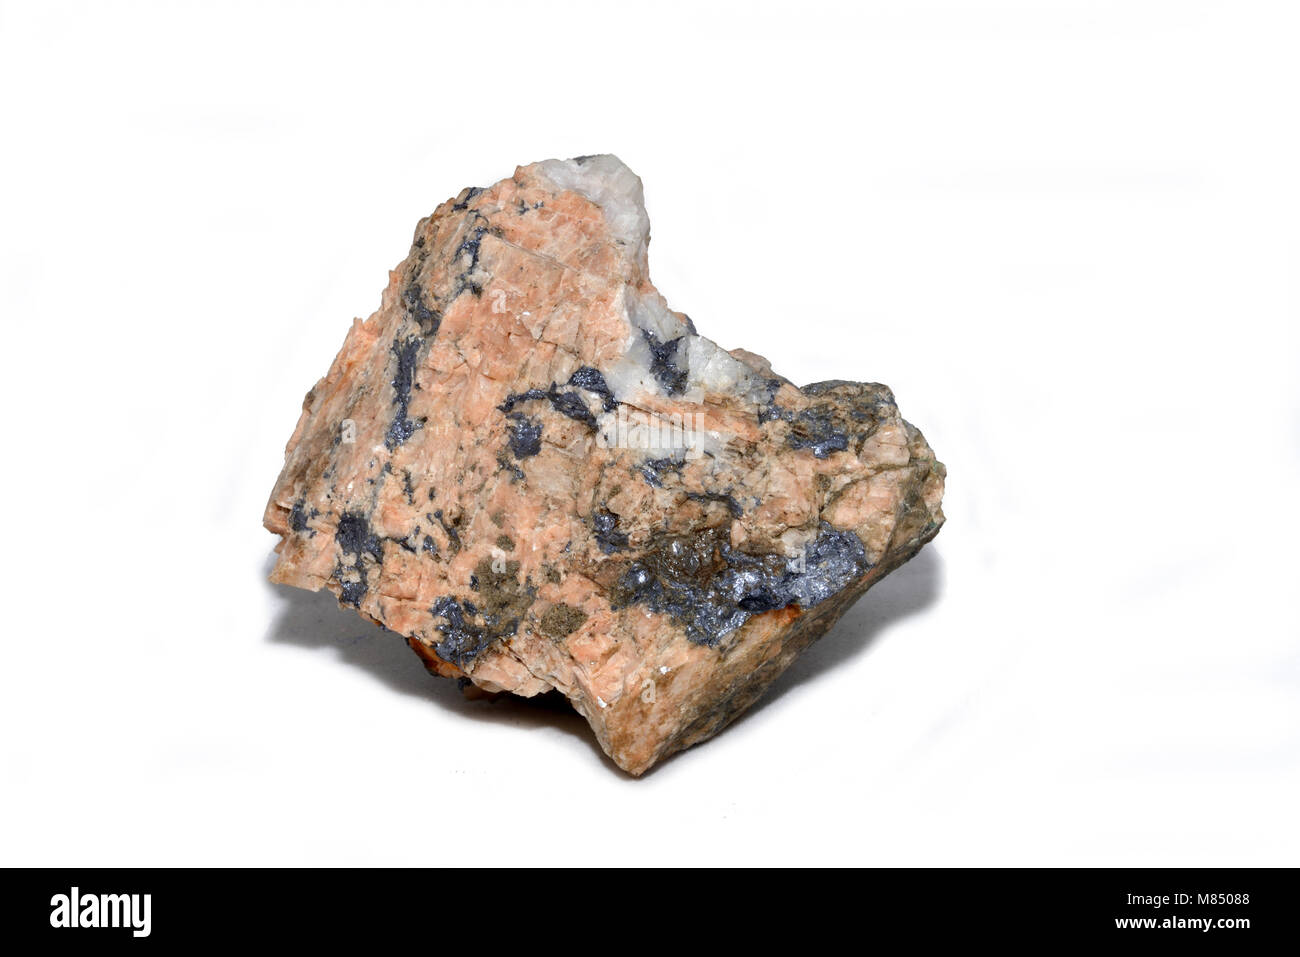 Un campione di molybdenite, bisolfuro di molibdeno nella sua minerale forma cristallina, da Karamea, Nuova Zelanda Foto Stock